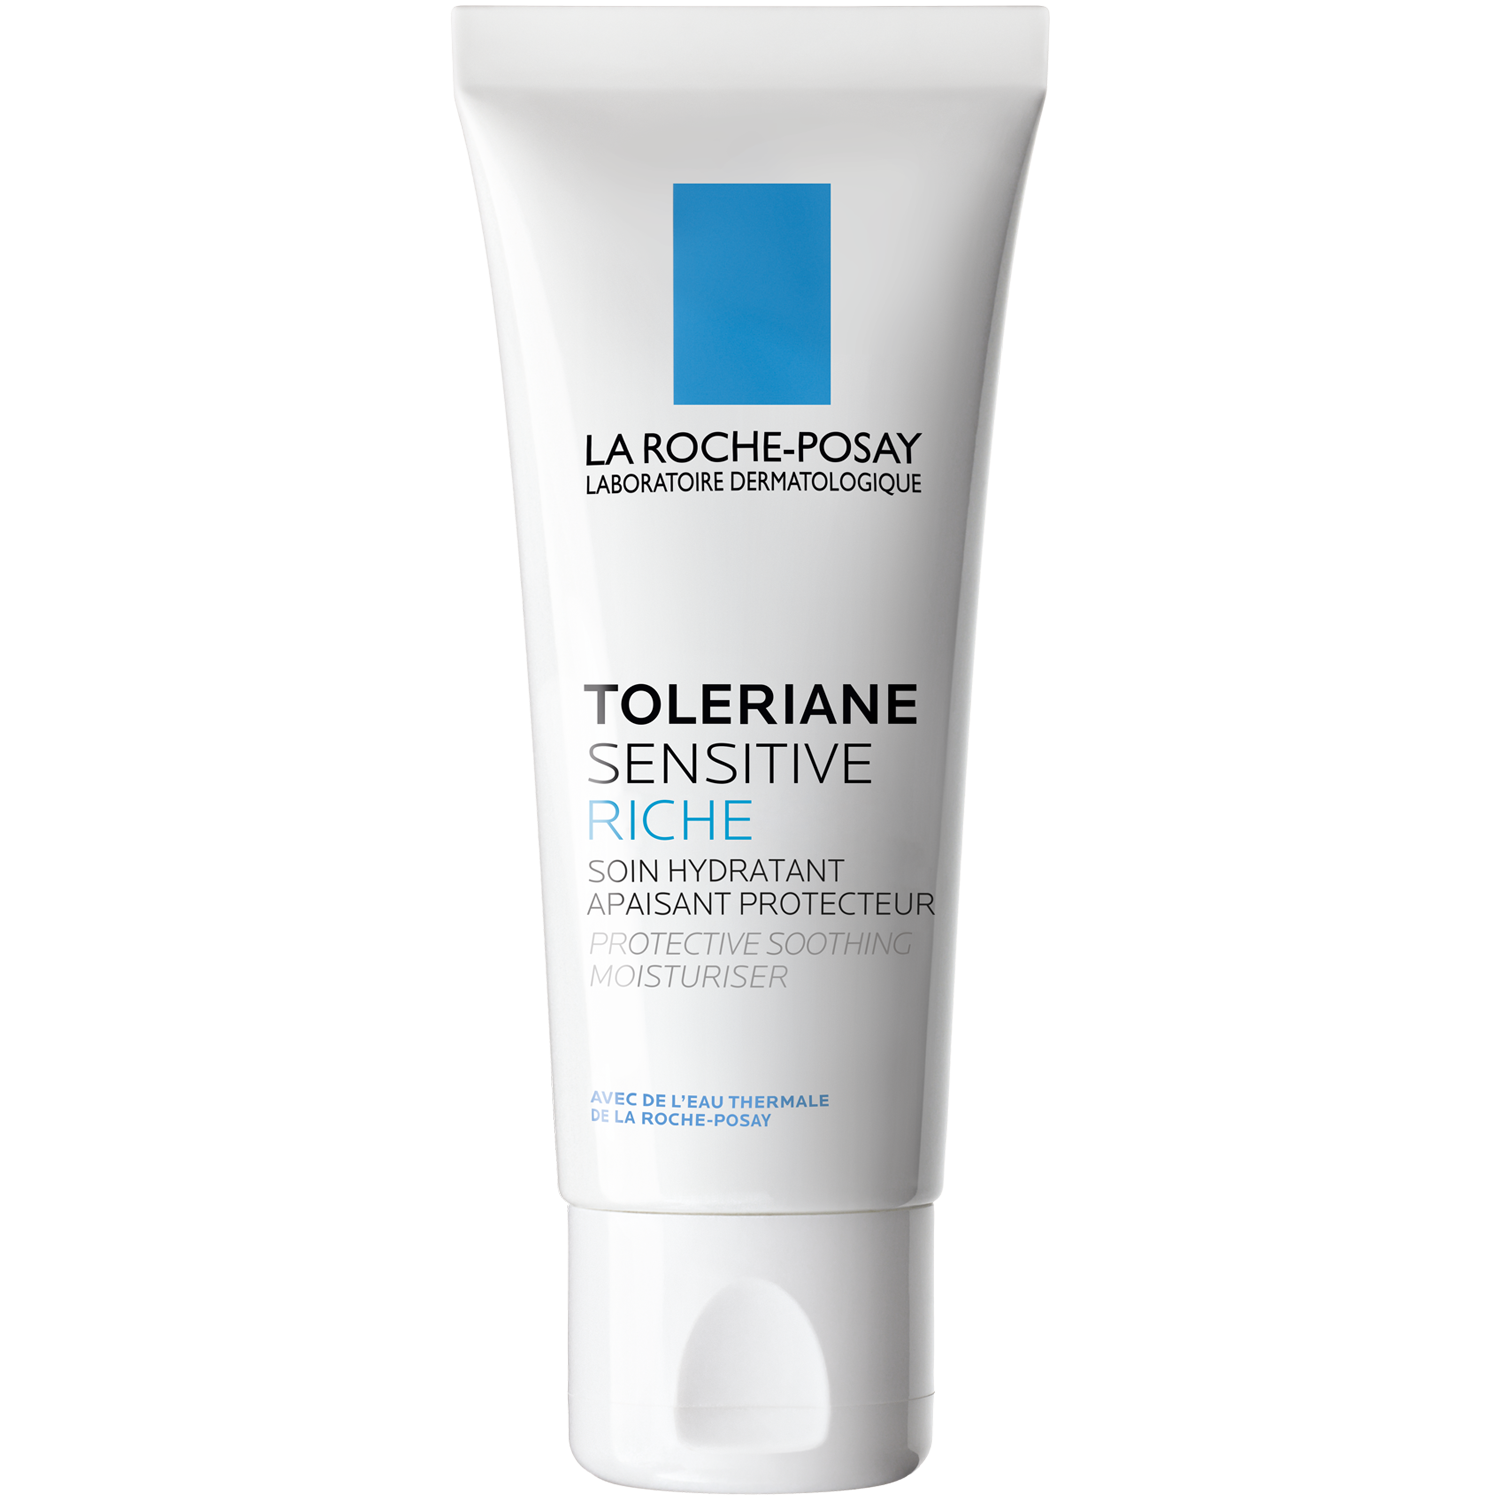 La Roche-Posay Toleriane Sensitive увлажняющий крем для чувствительной кожи с насыщенной текстурой, 40 мл